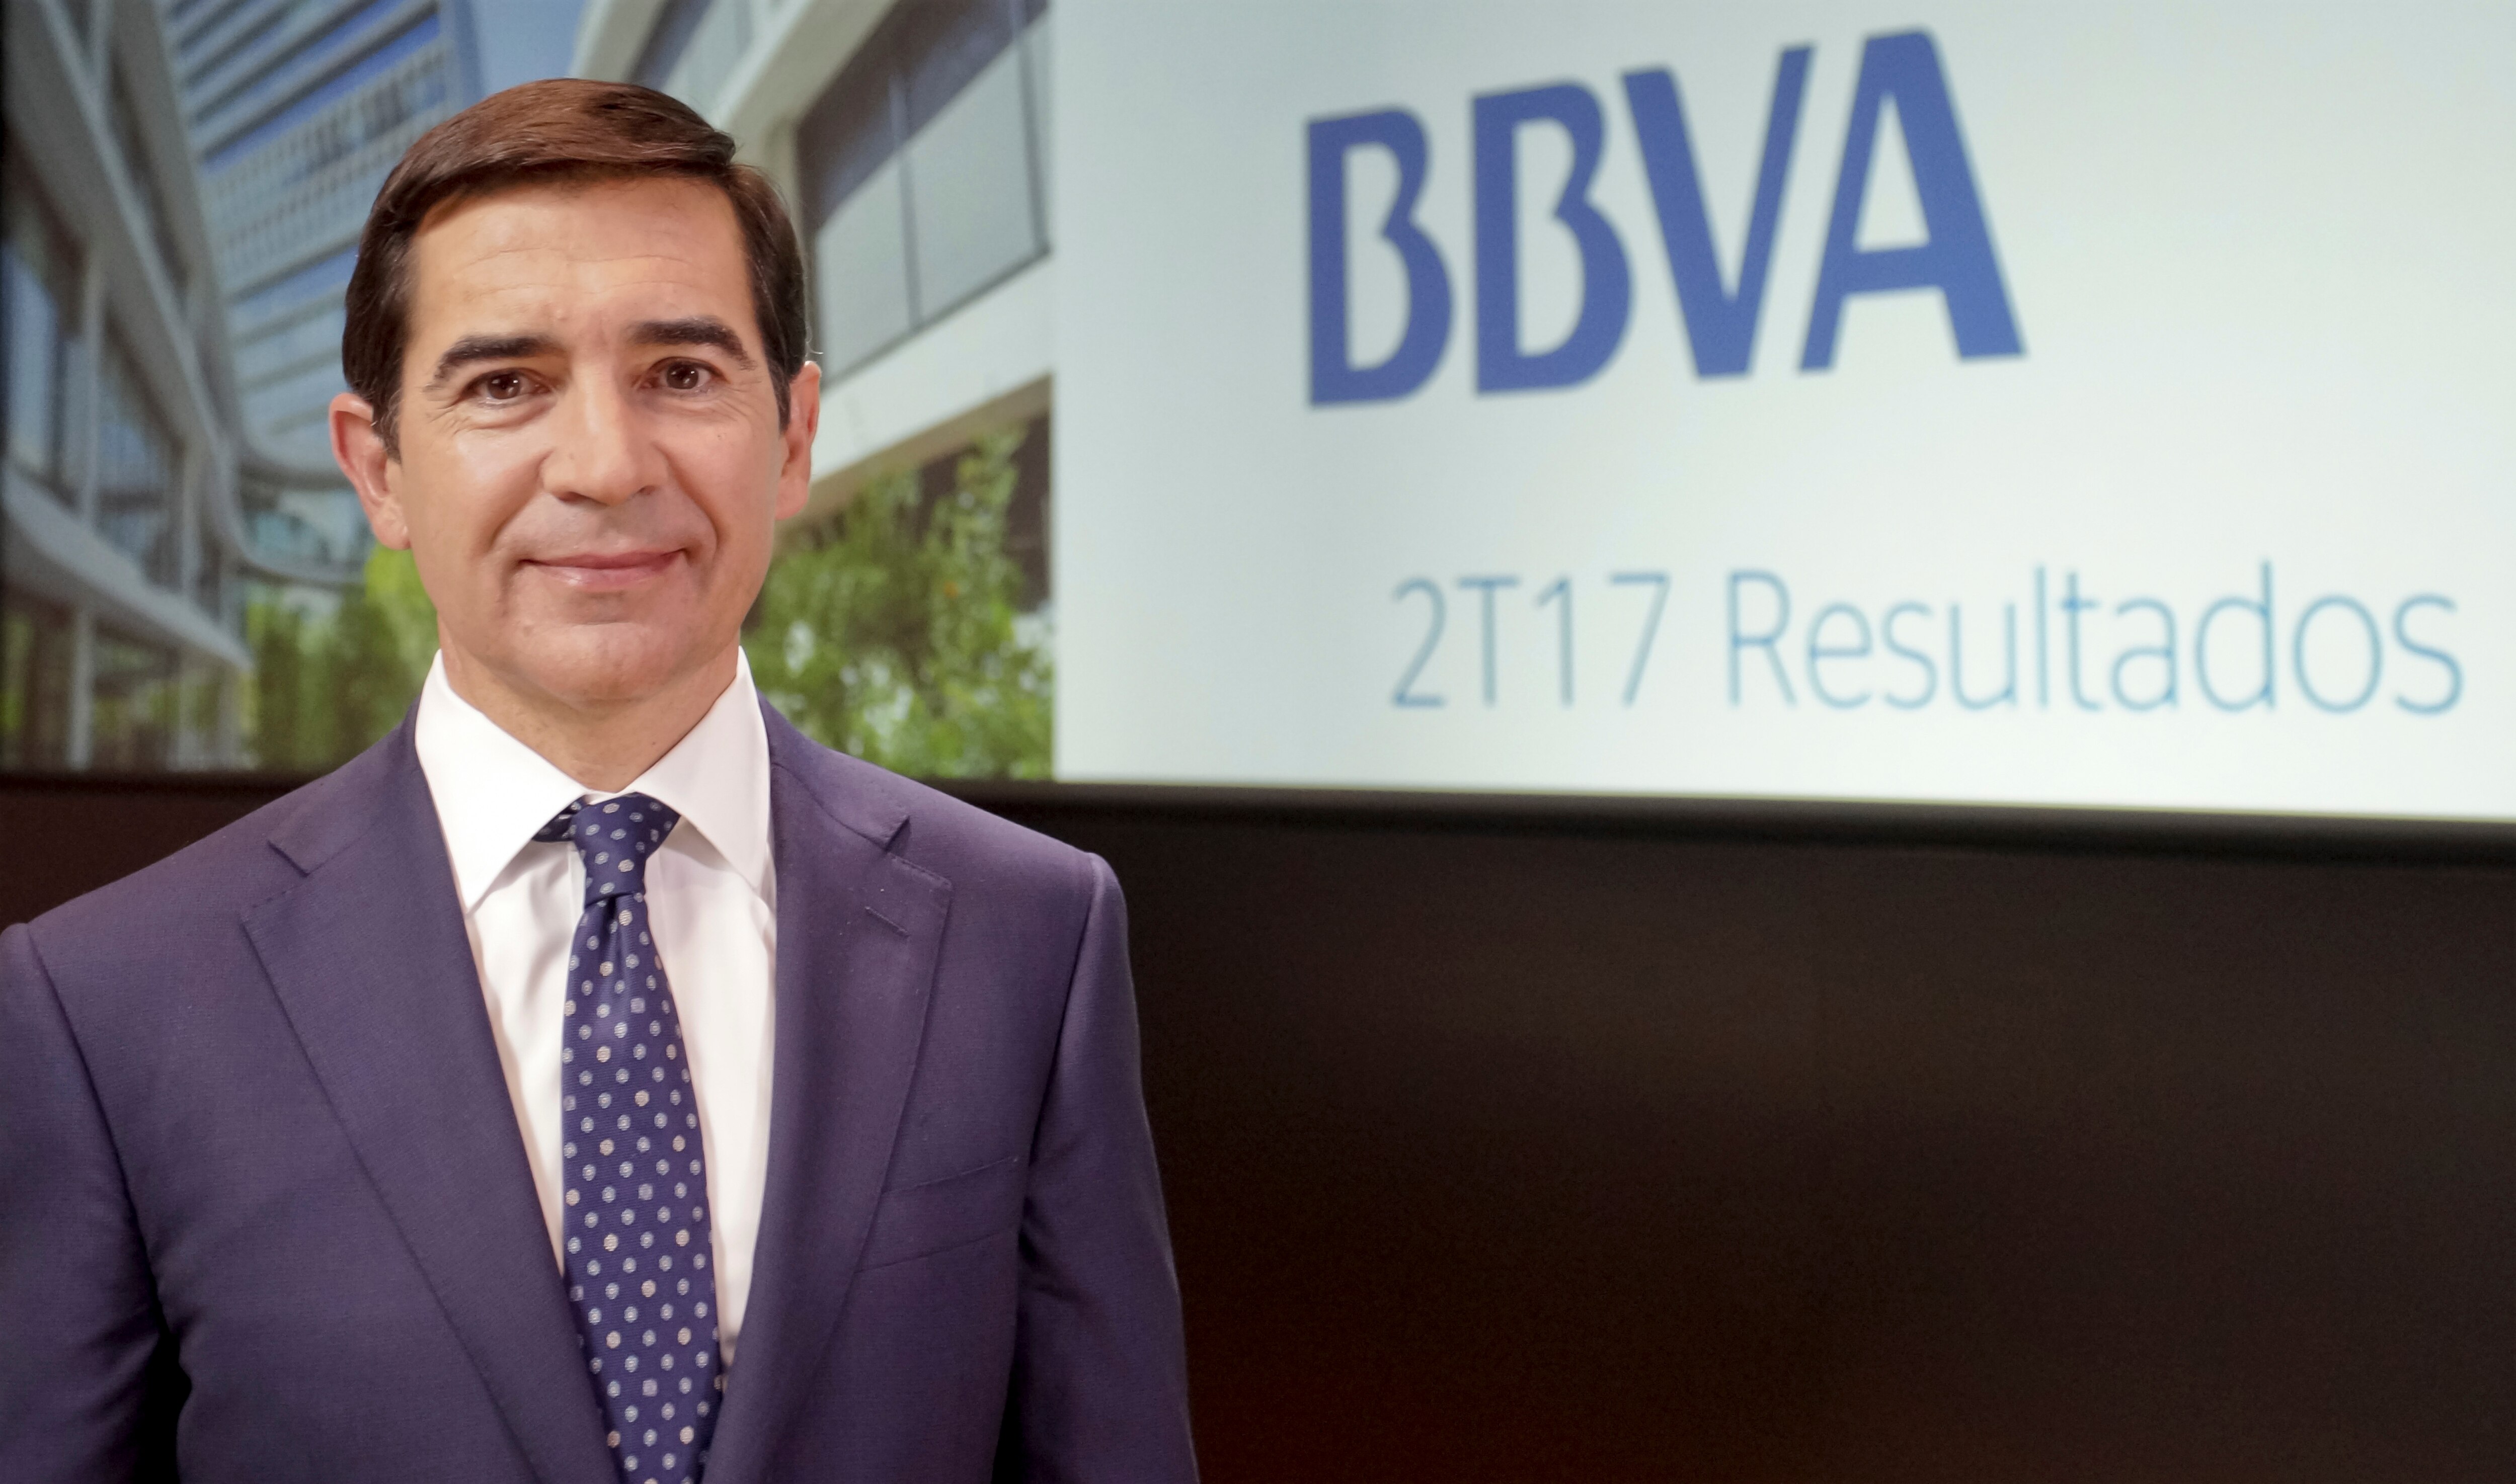 El consejero delegado de BBVA, Carlos Torres Vila, durante la presentación de los resultados 2T17